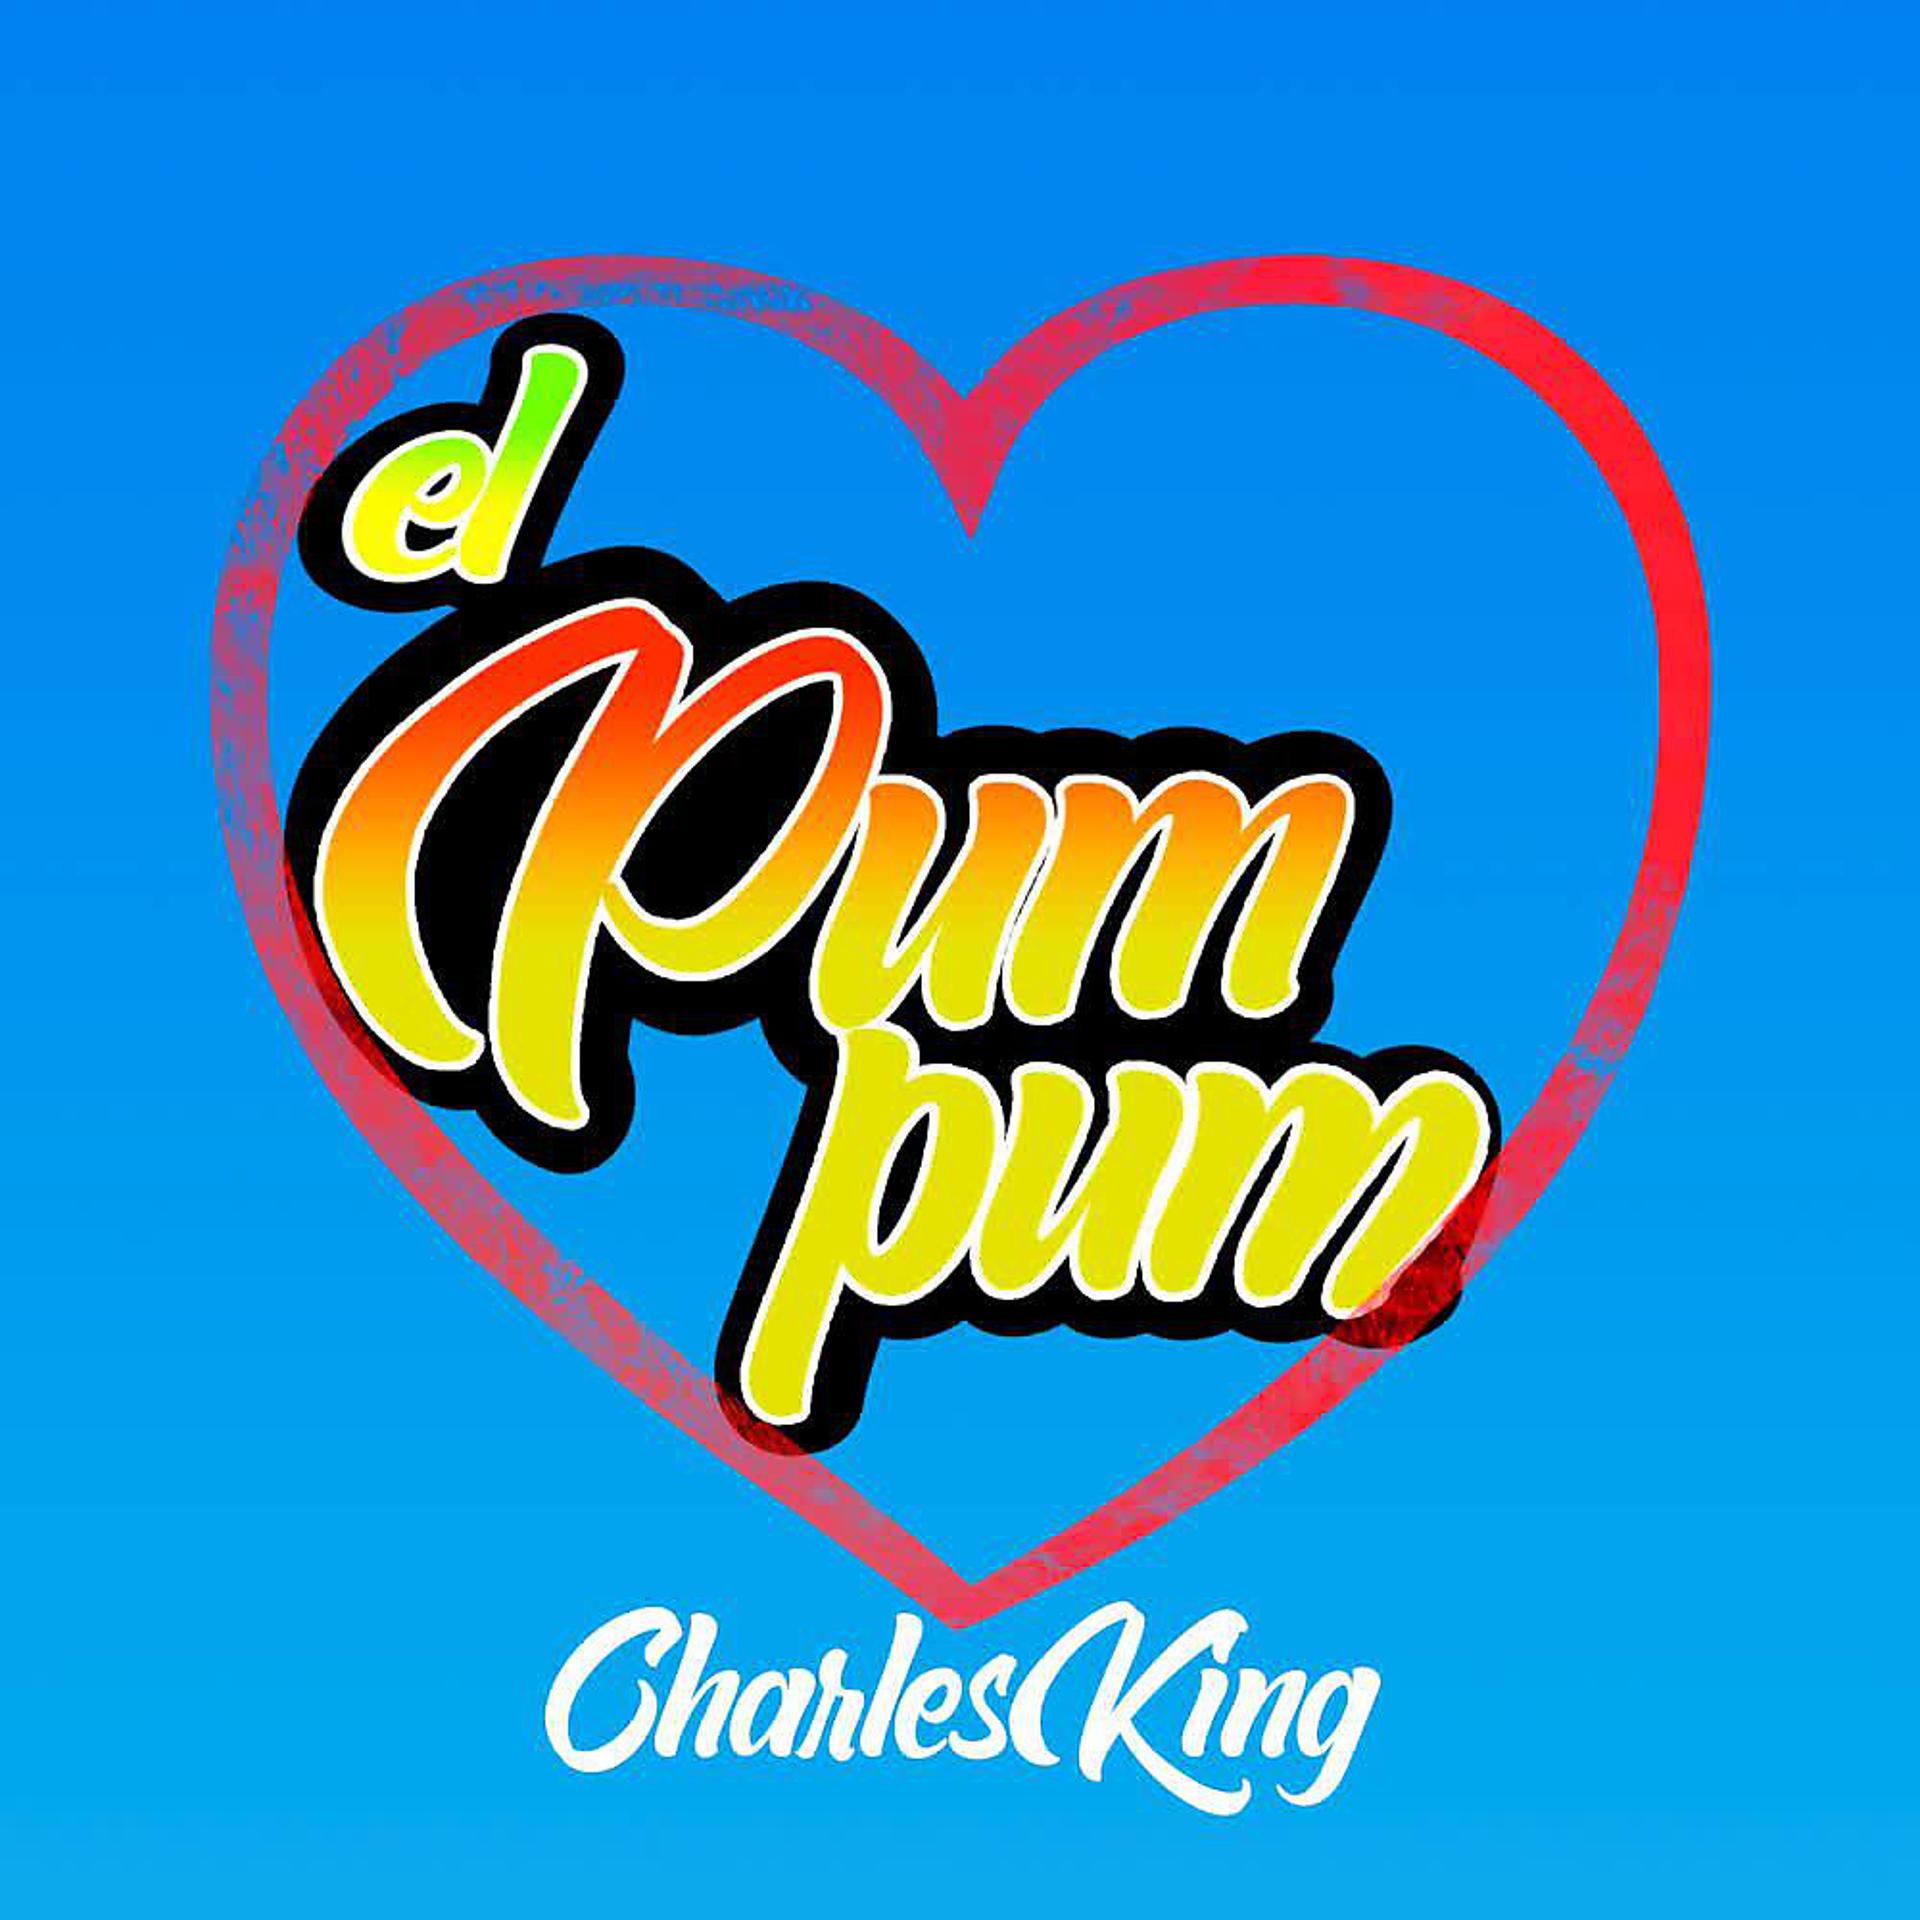 Постер альбома El Pum Pum